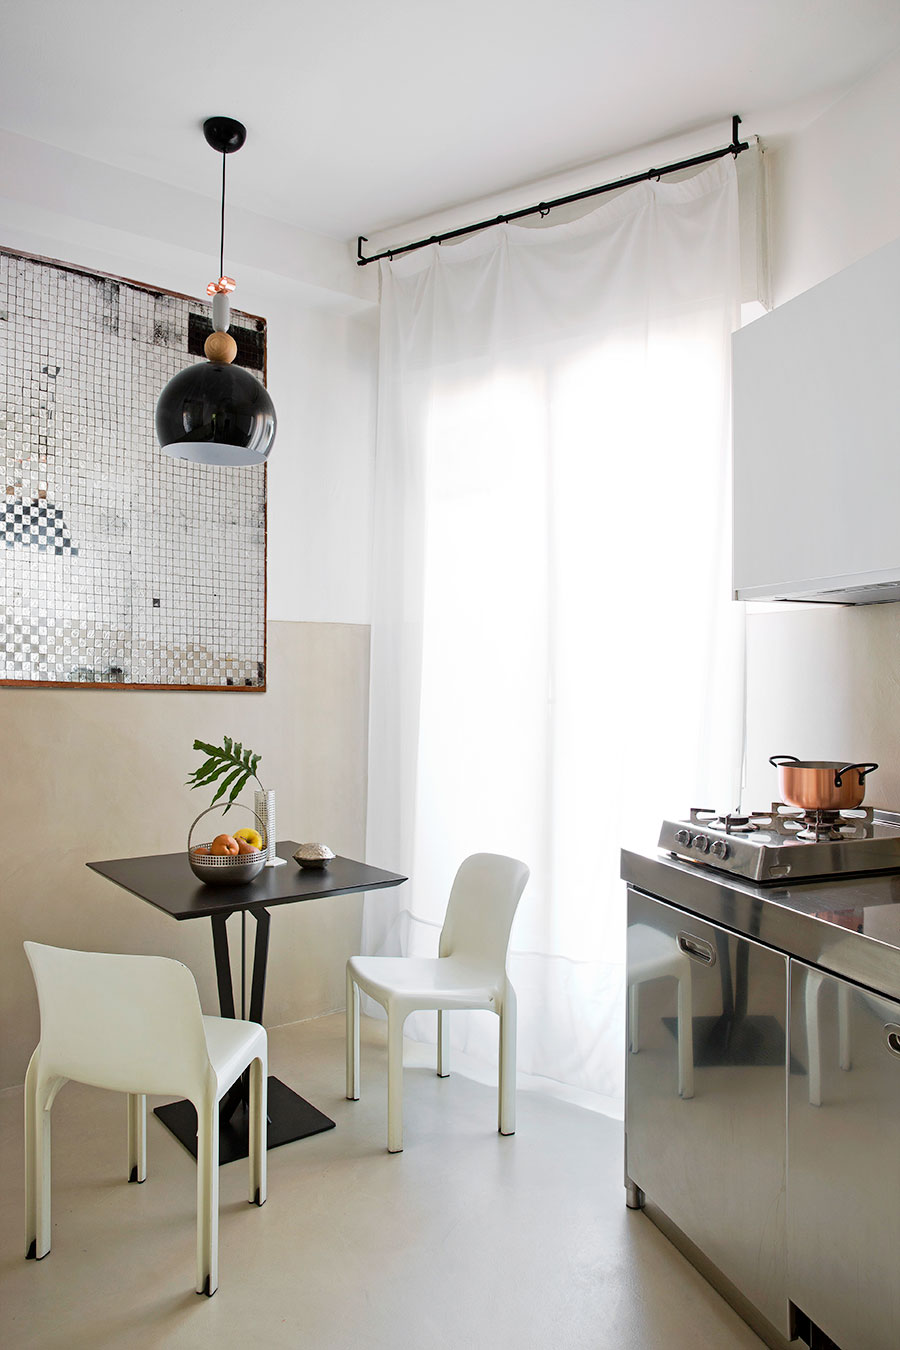 Giải pháp thông minh khi thiết kế phòng bếp 'khiêm tốn' là sử dụng đồ đạc nhỏ gọn, gam màu đơn sắc và bề mặt nội thất bằng kim loại sáng bóng để phản chiếu ánh sáng cũng như hình ảnh cho không gian như được 'nhân đôi' về mặt thị giác.